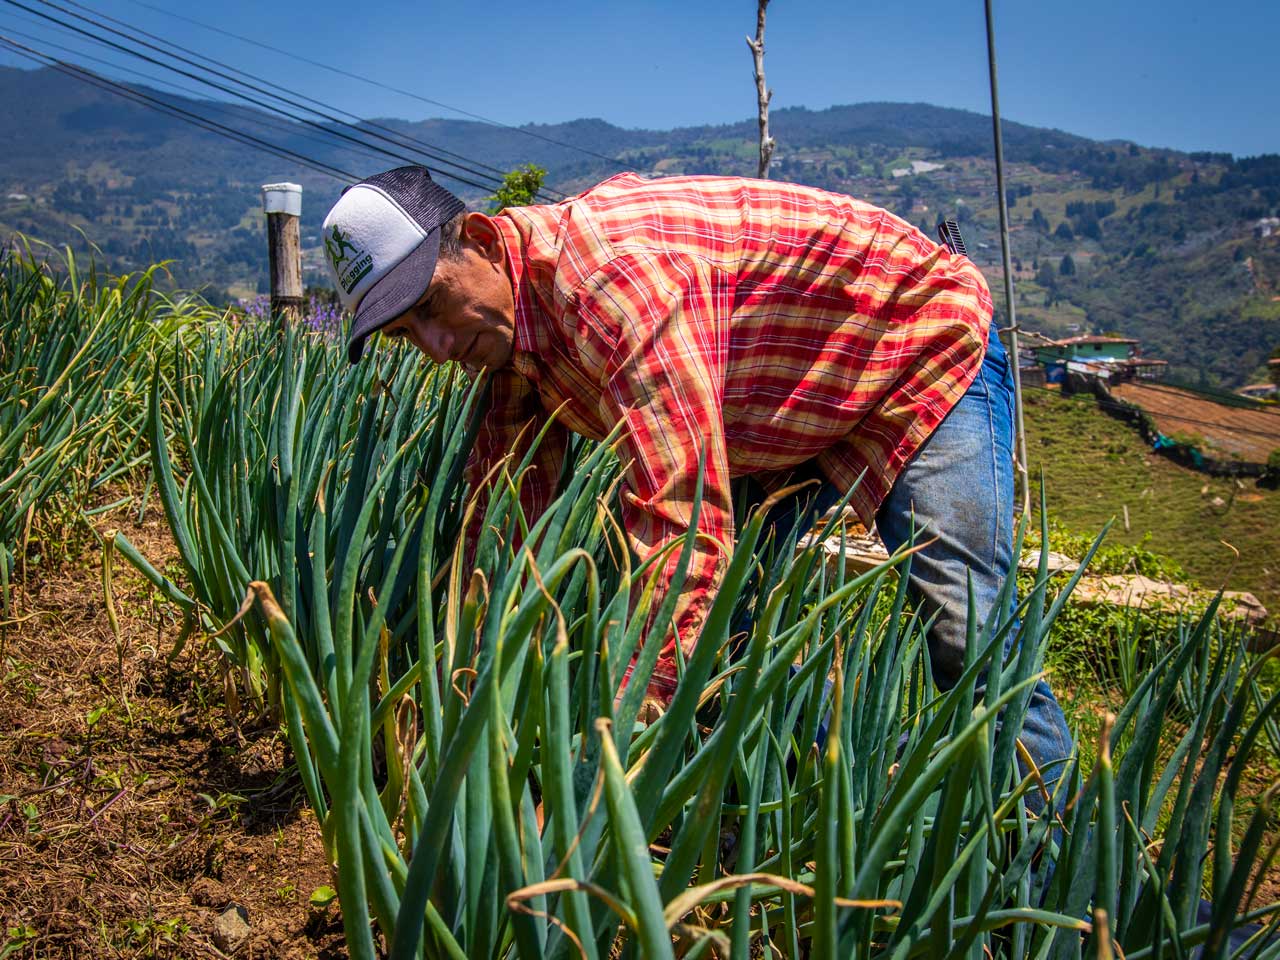 La Alcaldía de Medellín capacita a productores de los corregimientos para la comercialización de sus alimentos